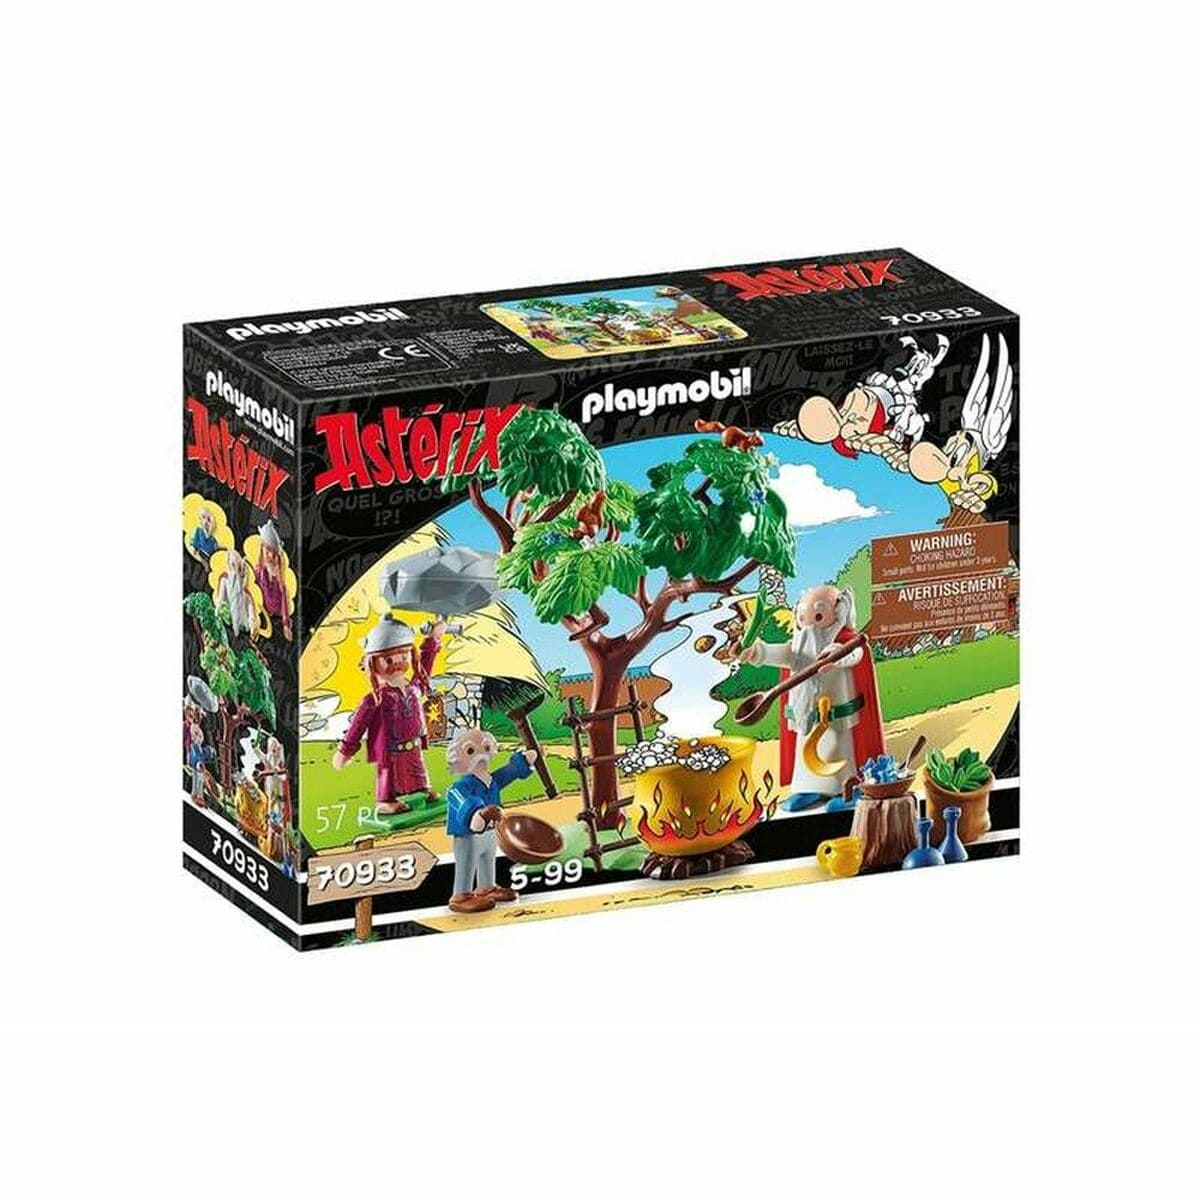 Playmobil Spielzeug | Kostüme > Spielzeug und Spiele > Weiteres spielzeug Playset Playmobil Getafix with the cauldron of Magic Potion Astérix 70933 57 Stücke